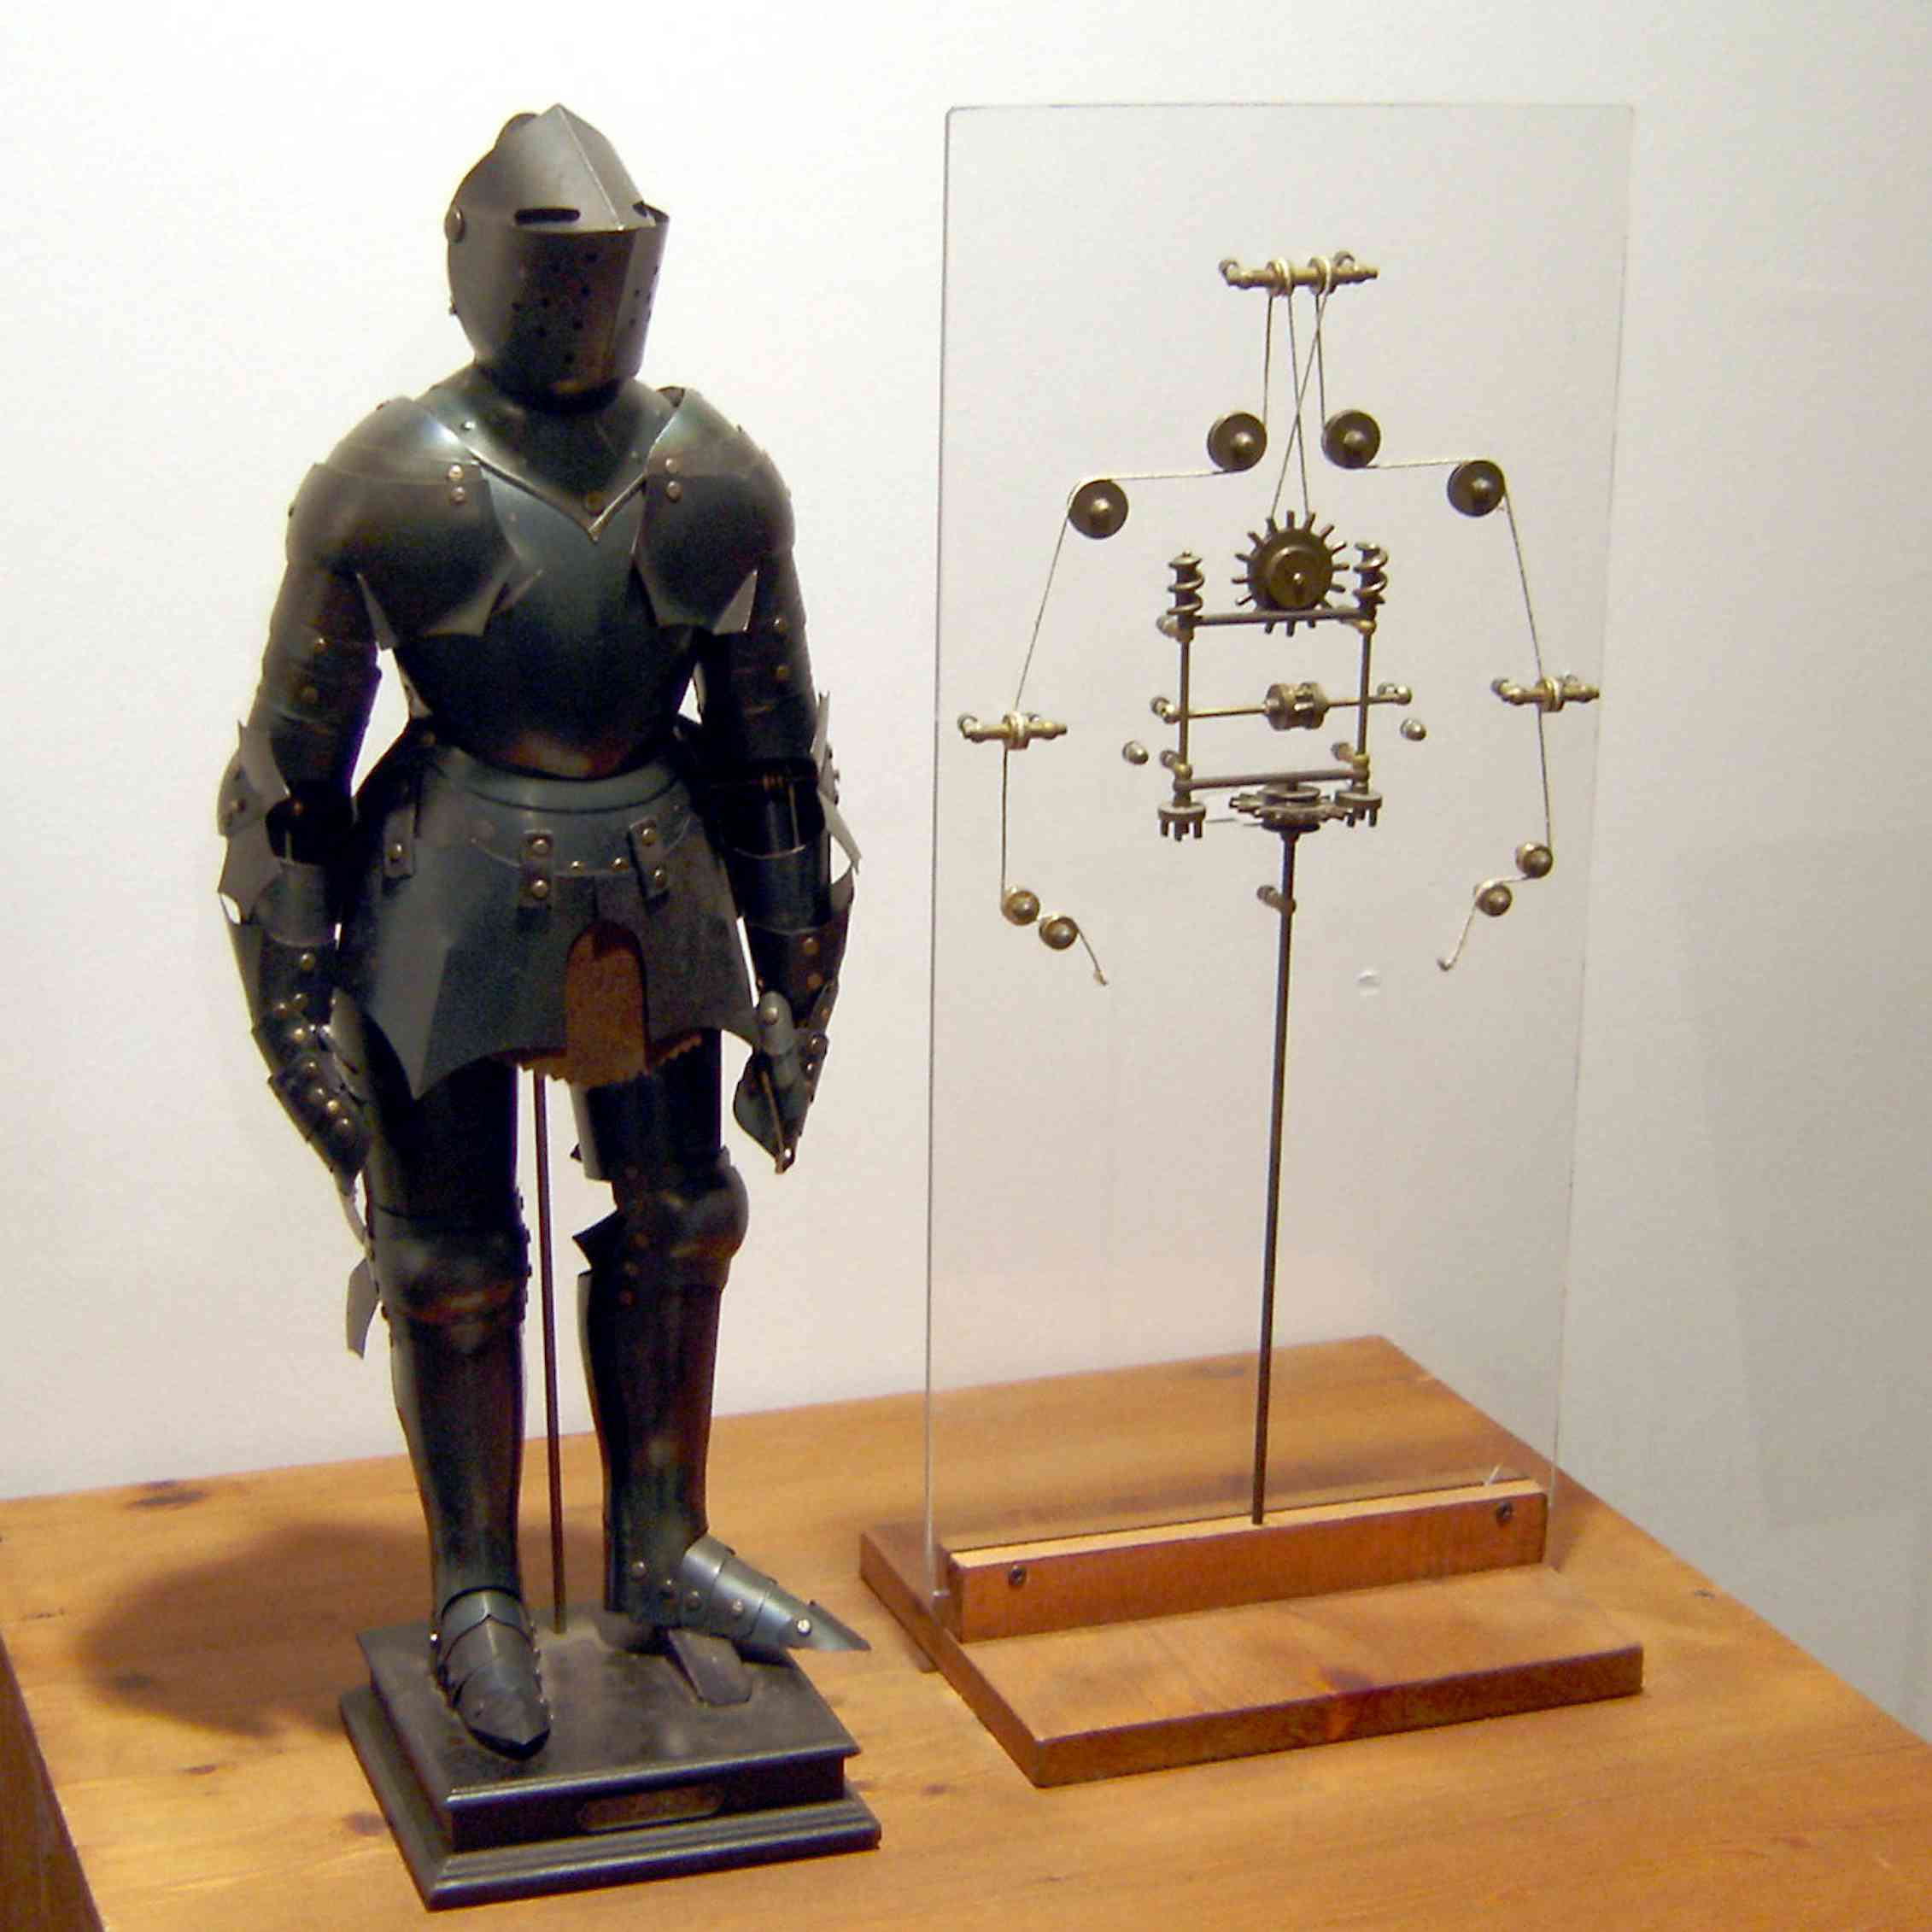 Первый механический прототип робота. Робот рыцарь Леонардо да Винчи. Робот Леонардо да Винчи 1495. Механический рыцарь Леонардо да Винчи. Первый человекоподобный робот Леонардо да Винчи.